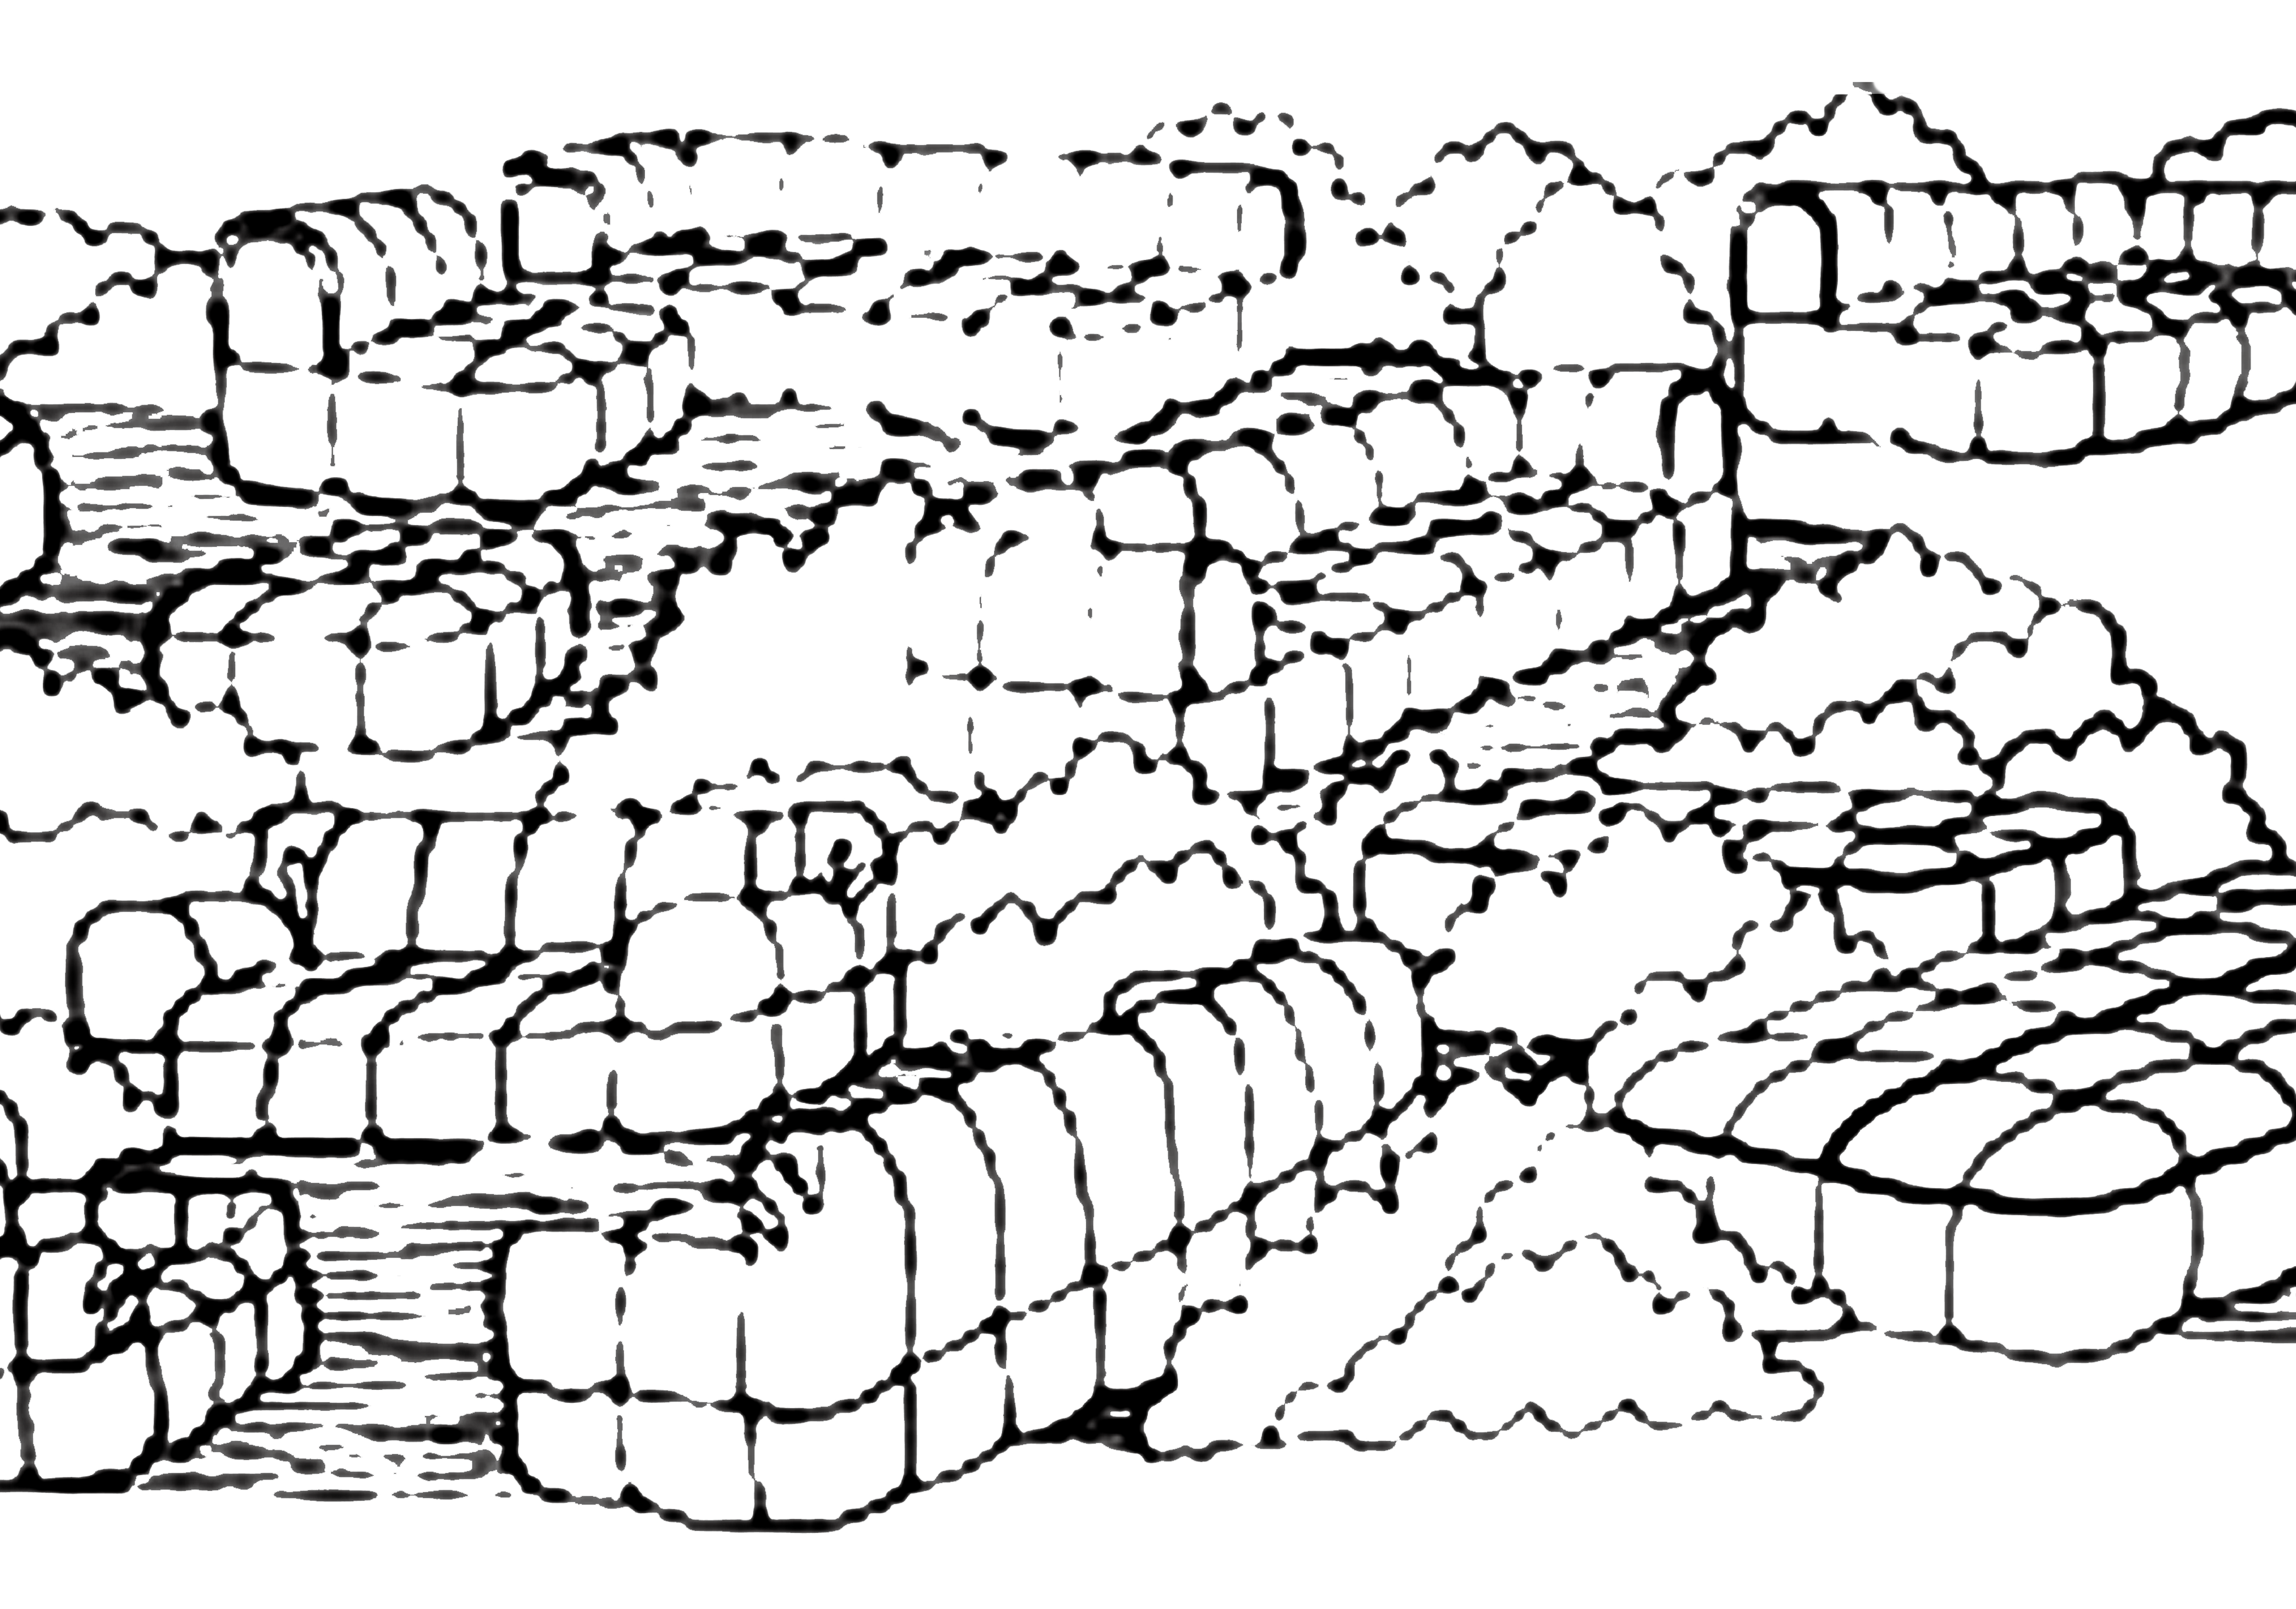 The Strips sofa by Cini Boeri is still one of Arflex's most popular sofas. Drawing c/o Arflex. 